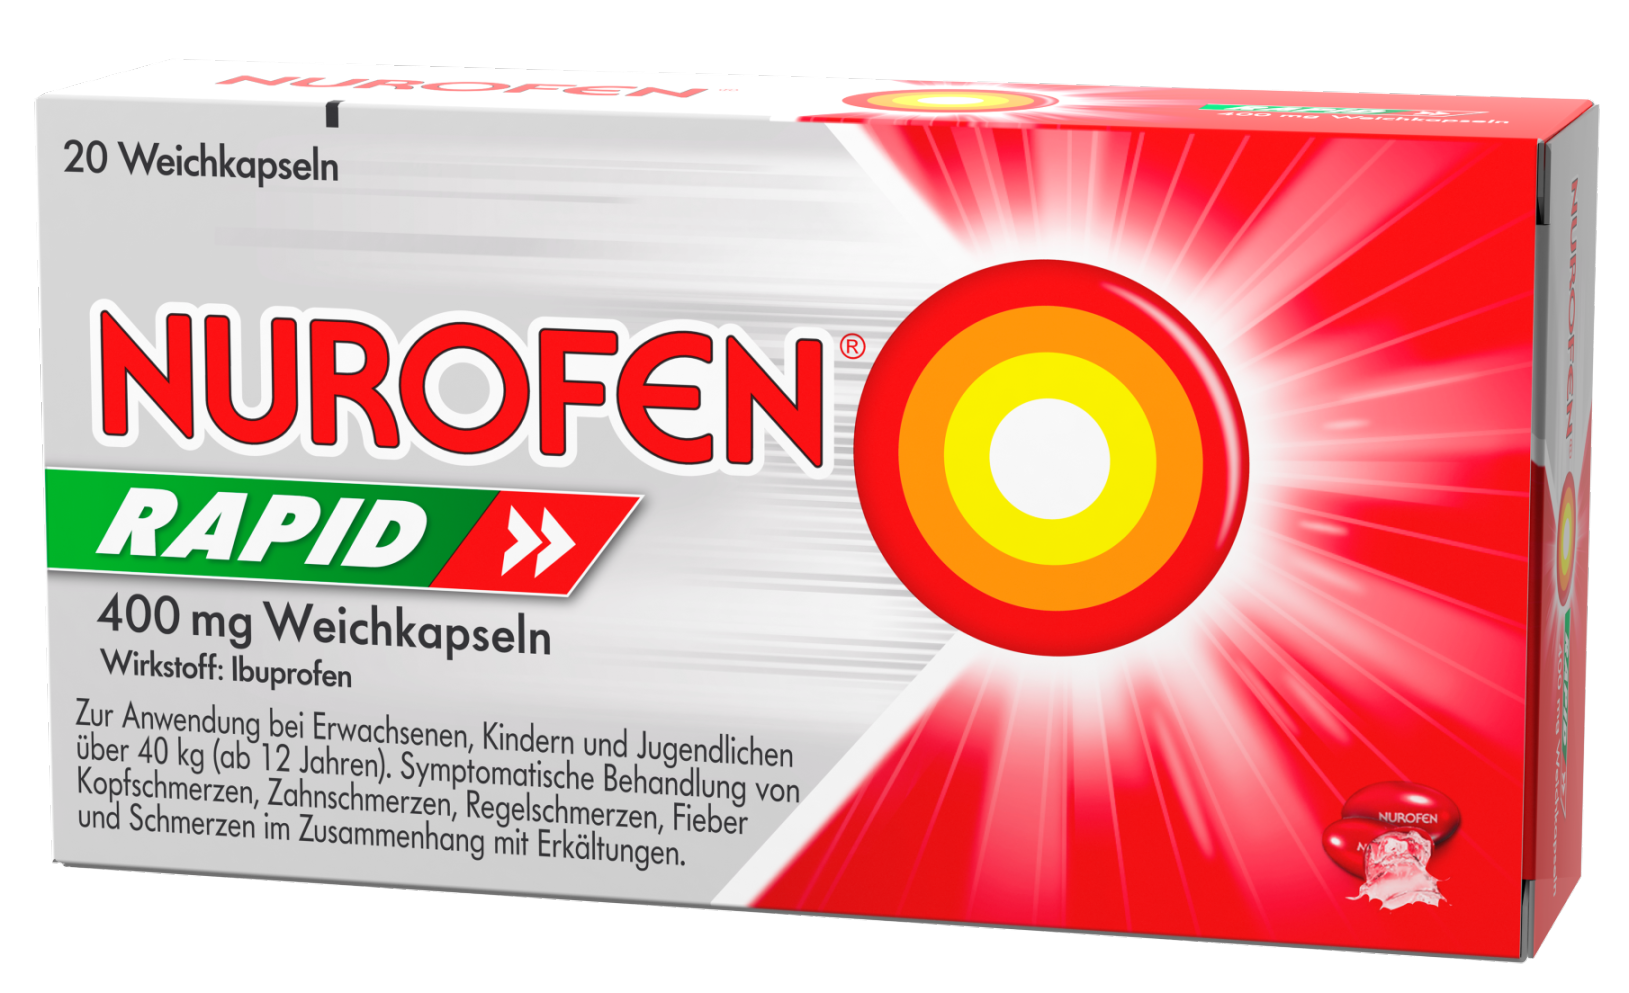 nurofen-rapid-400-mg-weichkapseln-gebrauchsinformation